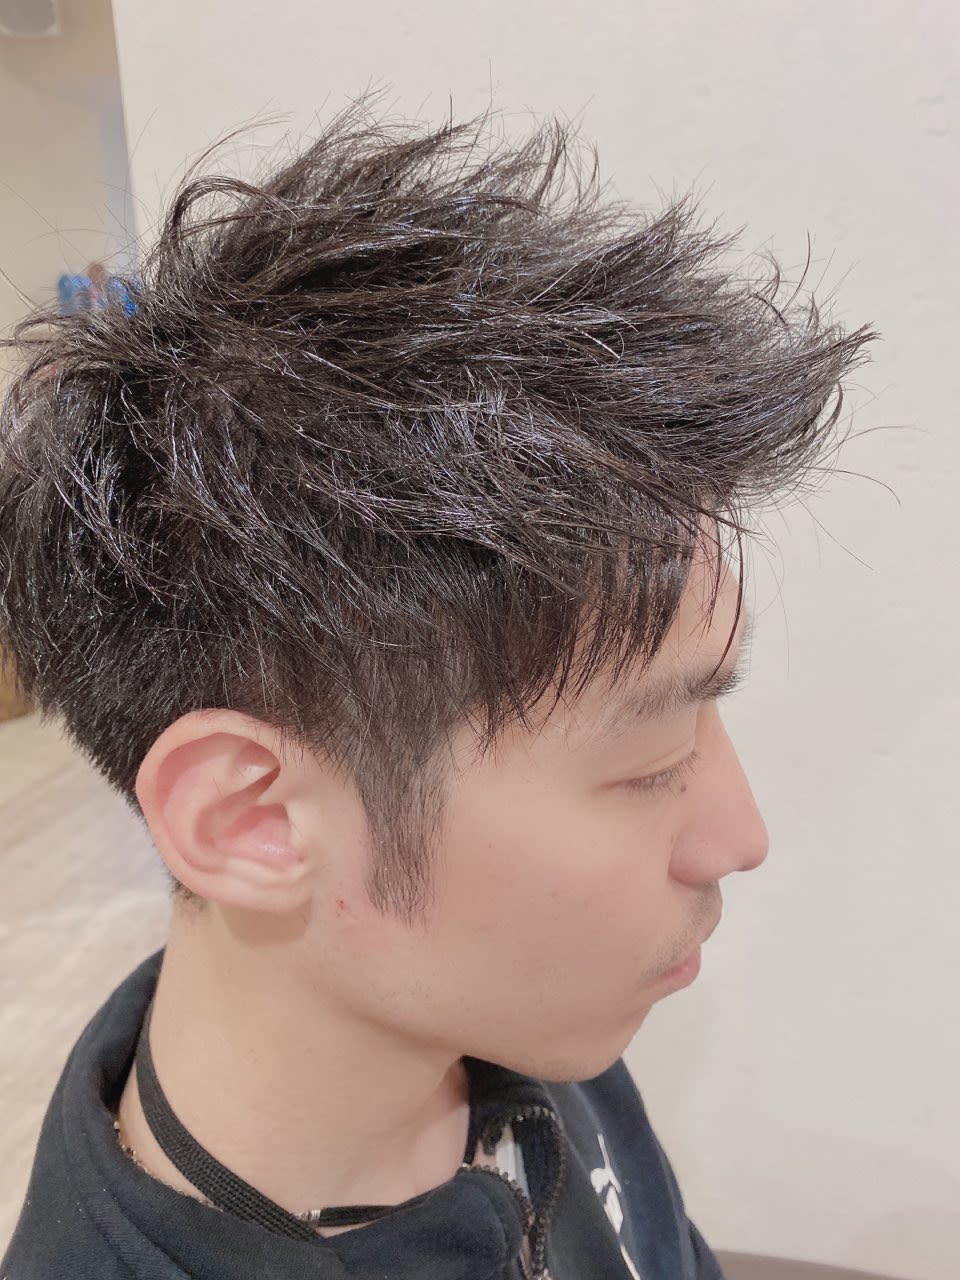 Raddium hair design re origo【ラディウムヘアーデザイン リ オリゴ】のスタイル紹介。ツーブロショート